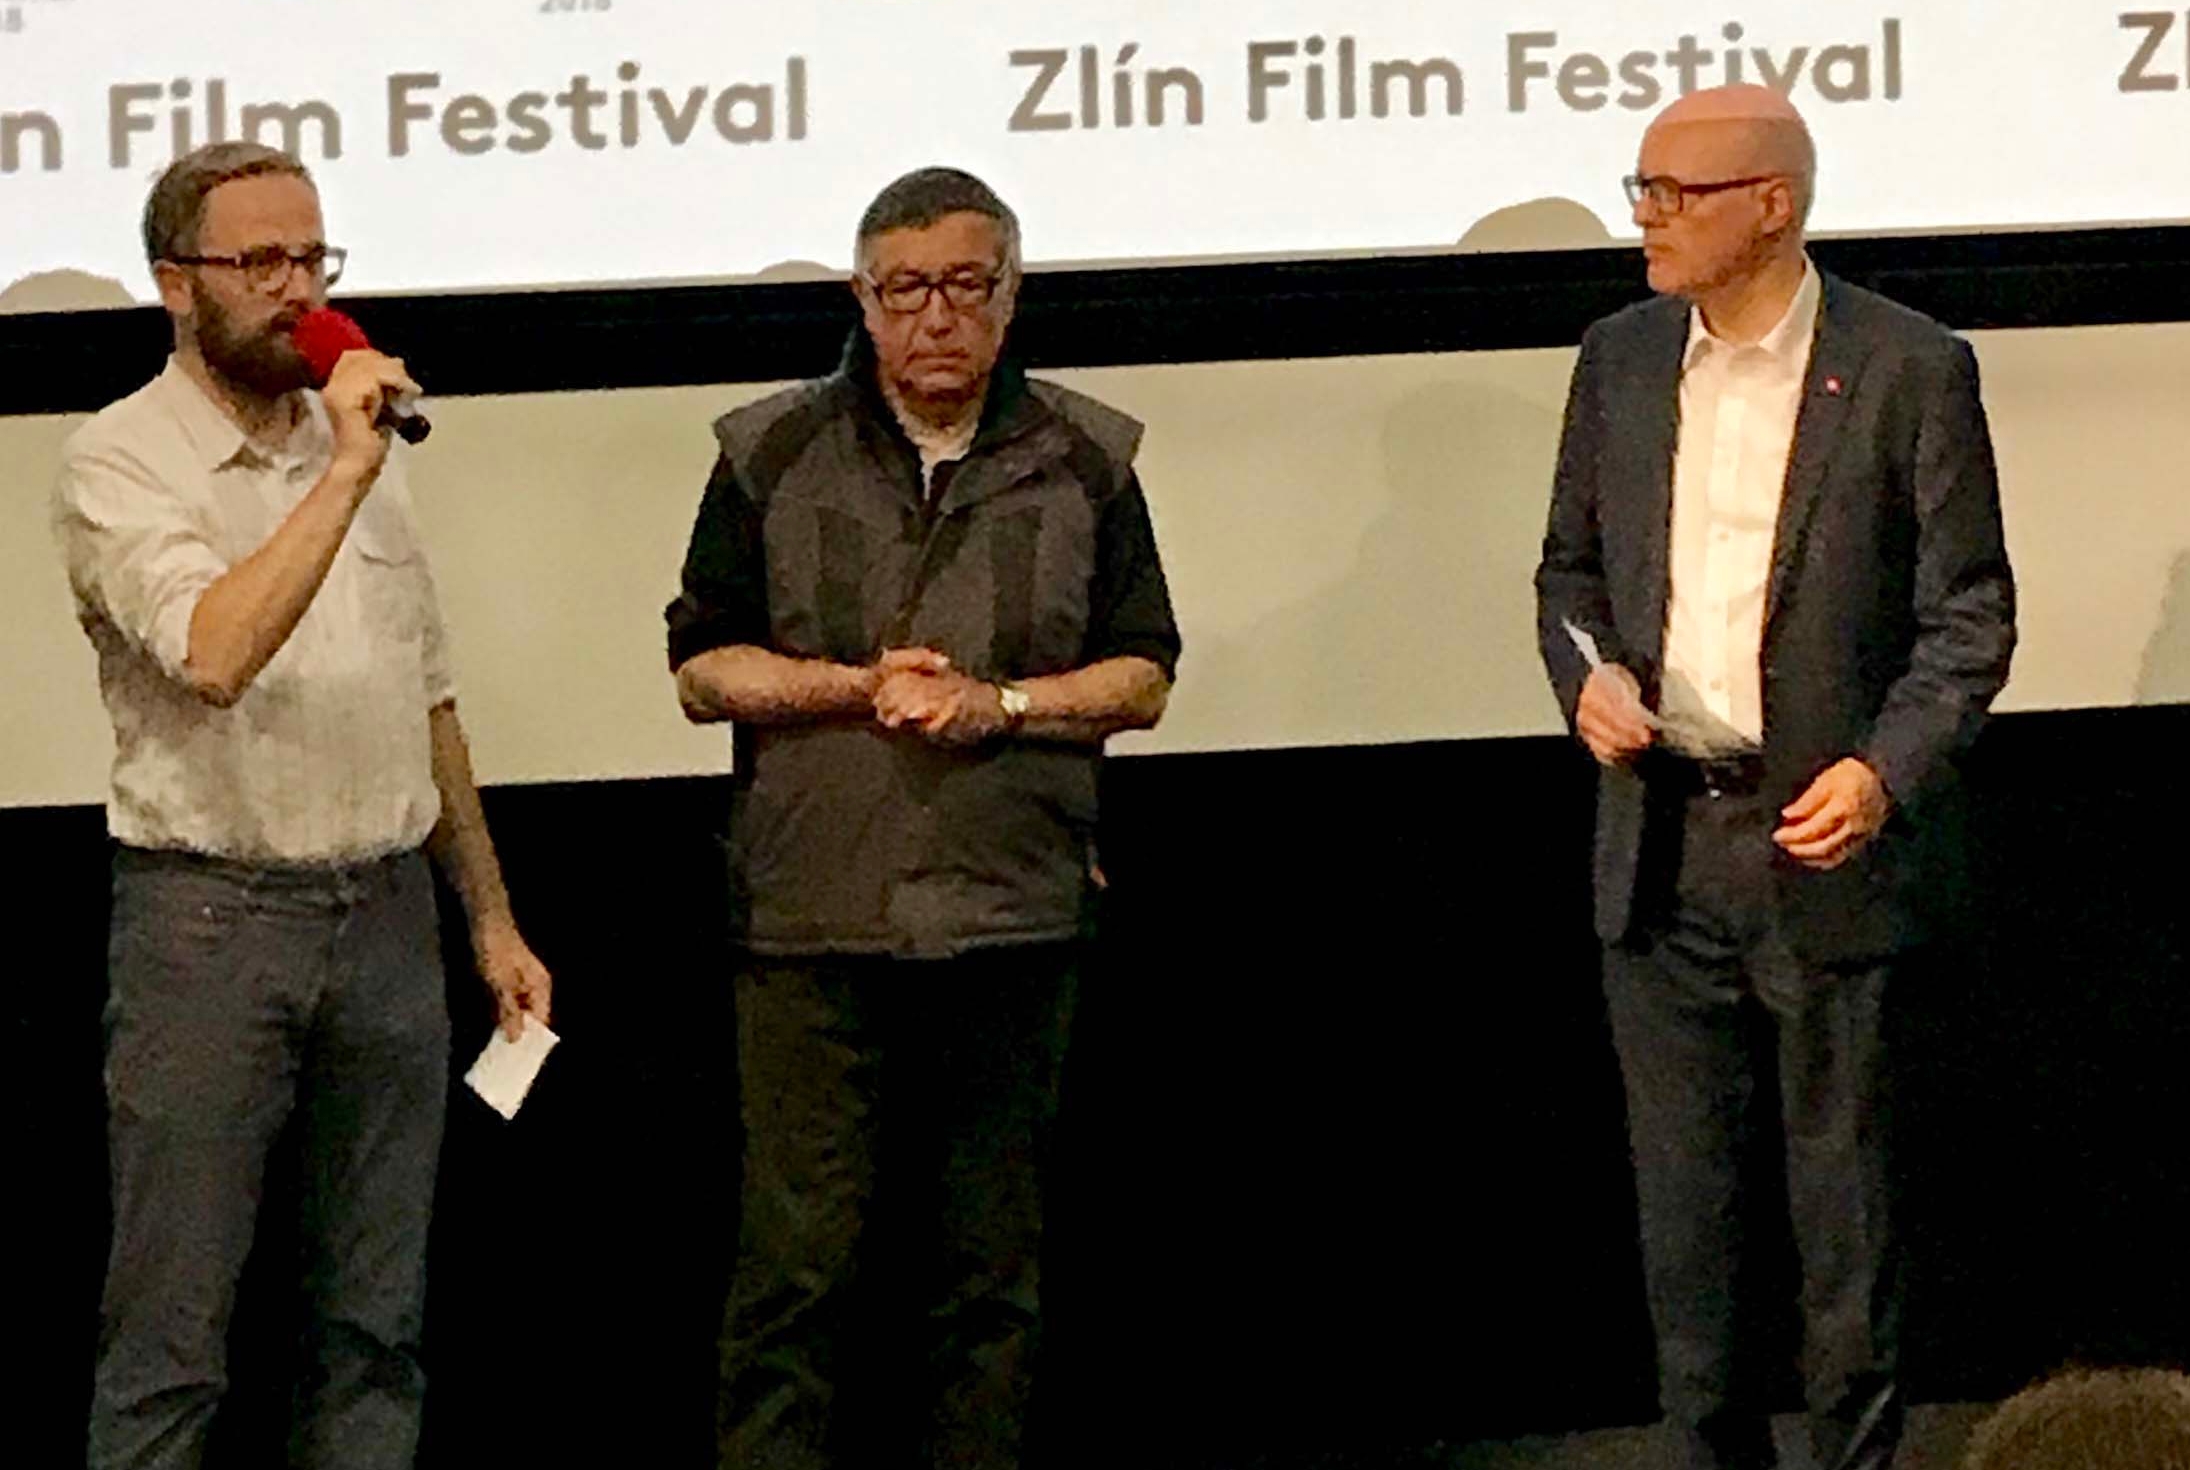 Promítání filmu „My a Matterhorn, Matterhorn a my“, režiséra Bernarda Šafaříka, kino Zlaté jablko ve Zlíně, dne 25.5. 2018